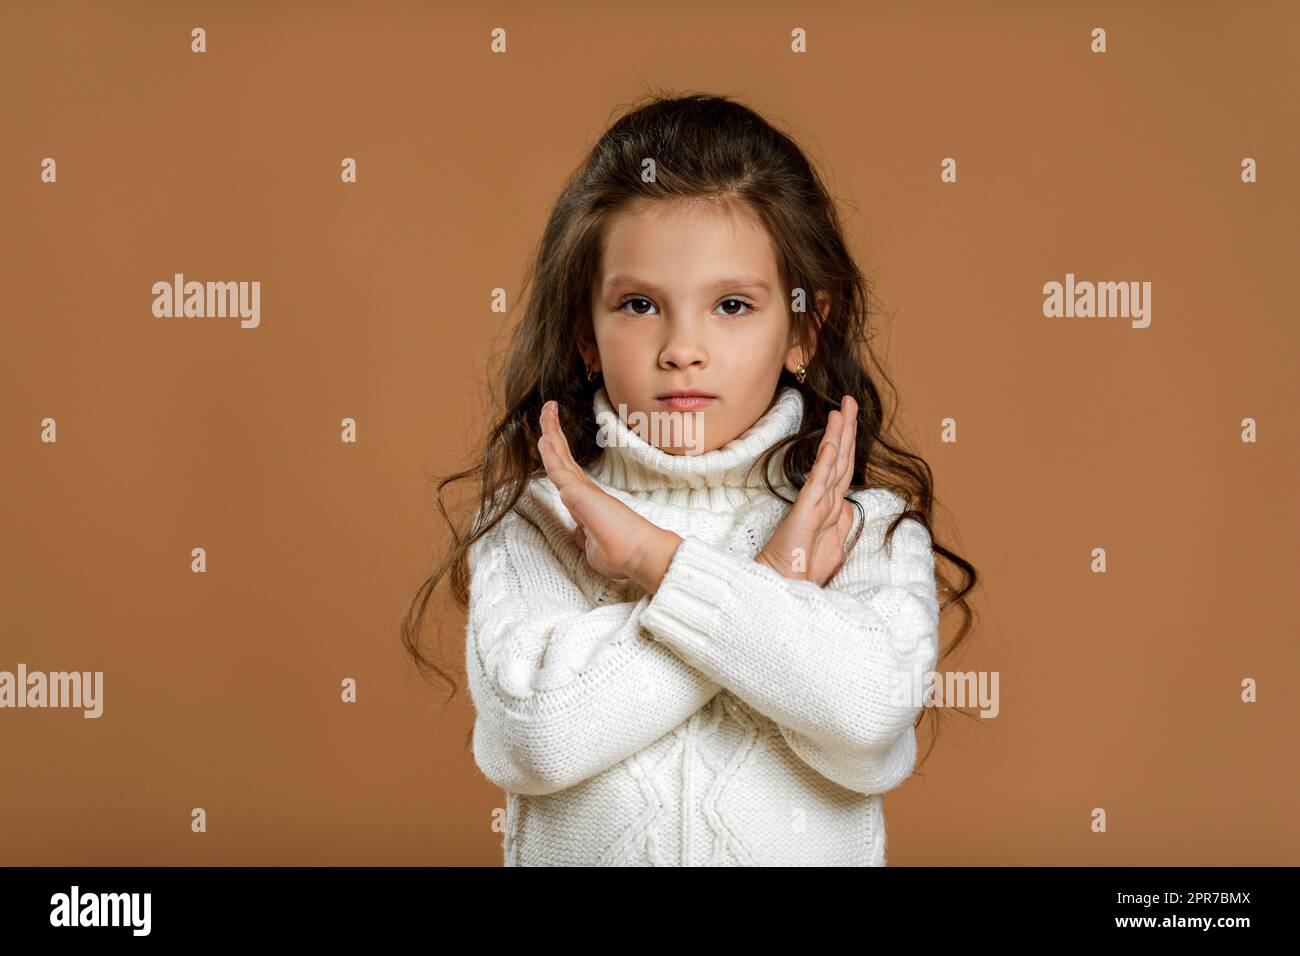 Ein kleines Mädchen im weißen Pullover, das eine Stoppbewegung macht Stockfoto